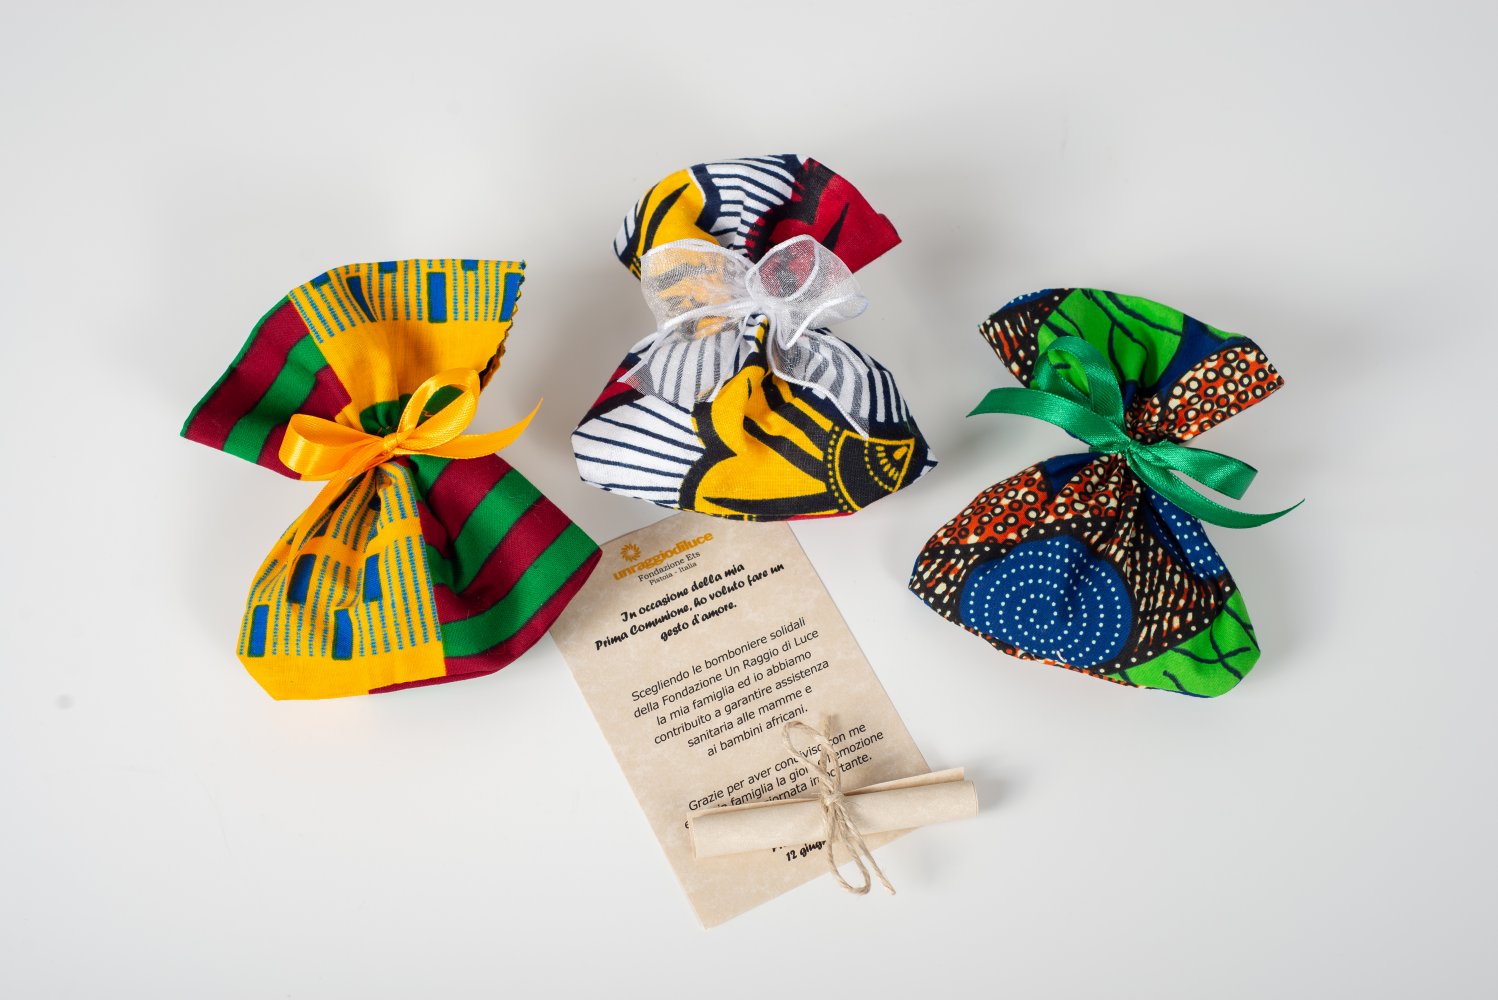 Sacchetti porta confetti in stoffa africana - Fondazione Un Raggio di Luce  Onlus - Townforyou - Fai acquisti e prenota eventi vicino a te